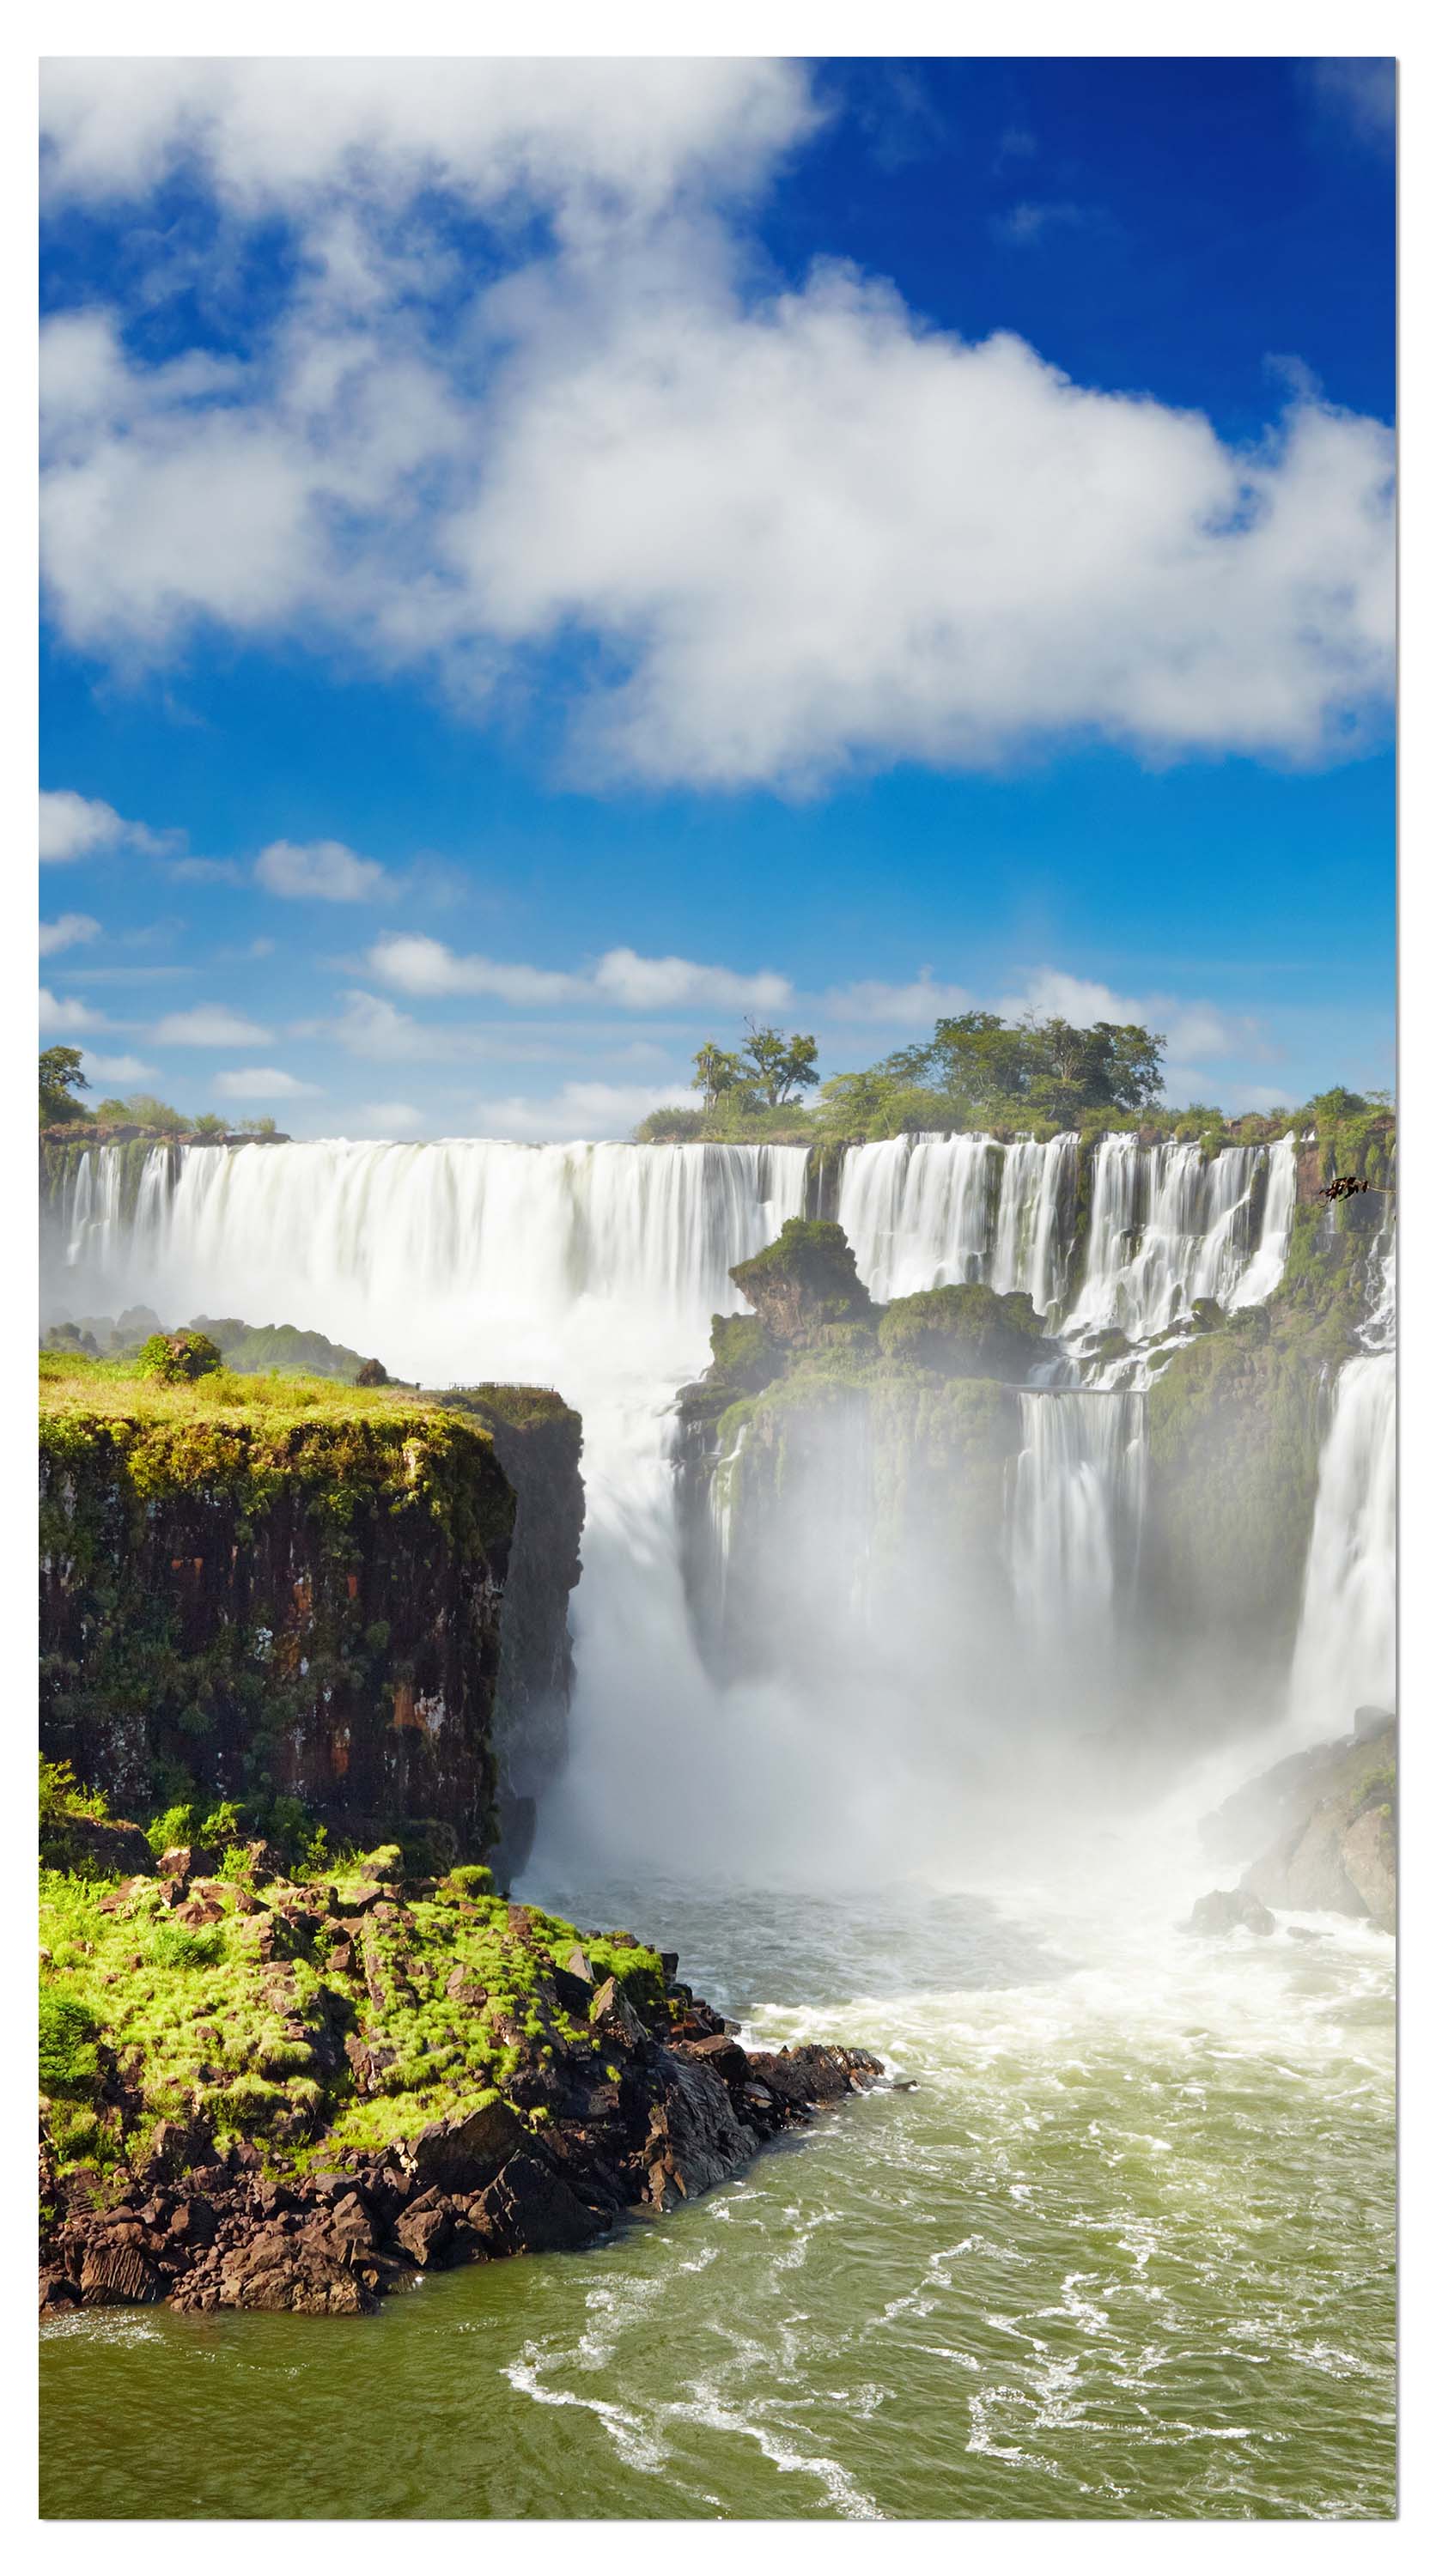 Garderobe Iguazzu Falls Argentinien M0284 entdecken - Bild 4